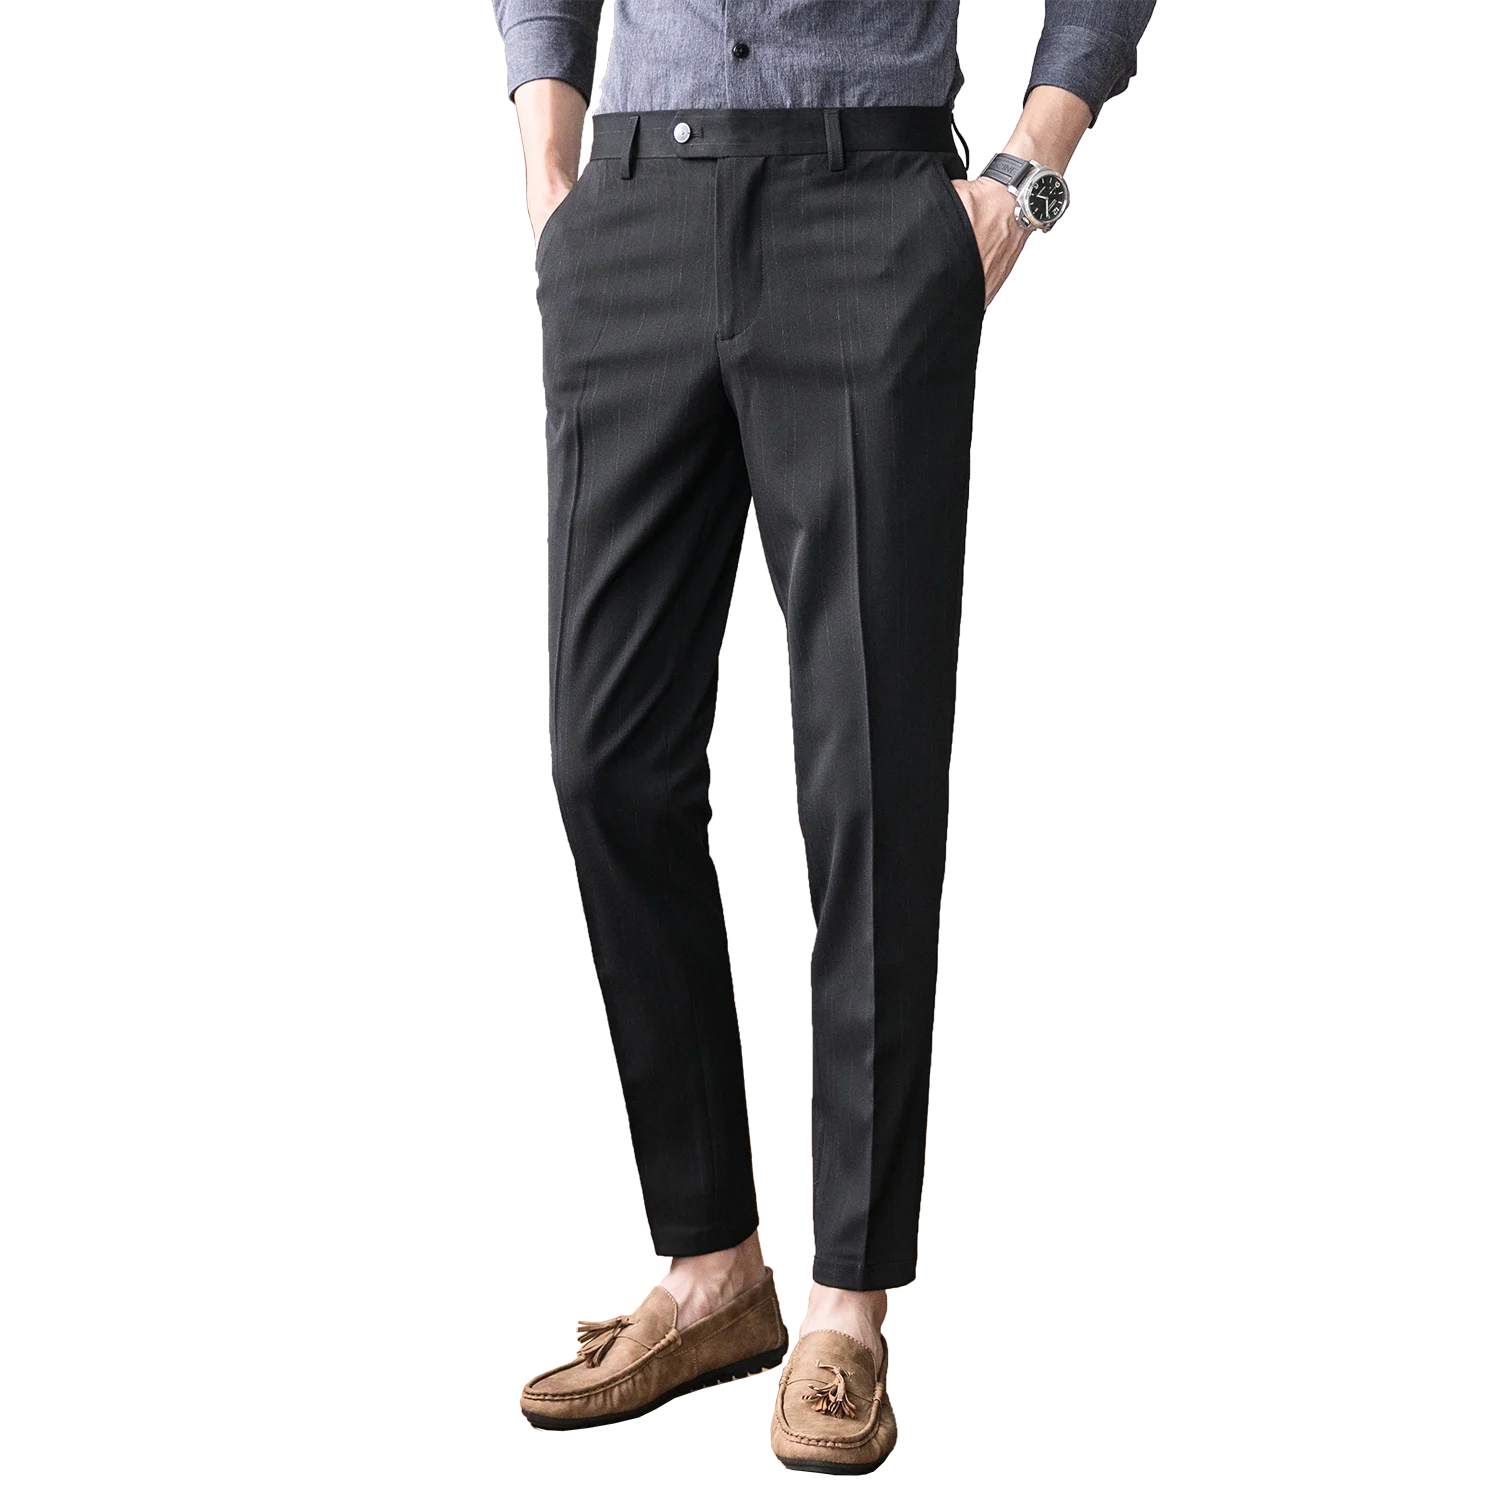 Aggregate more than 75 black pants suit men best - in.eteachers